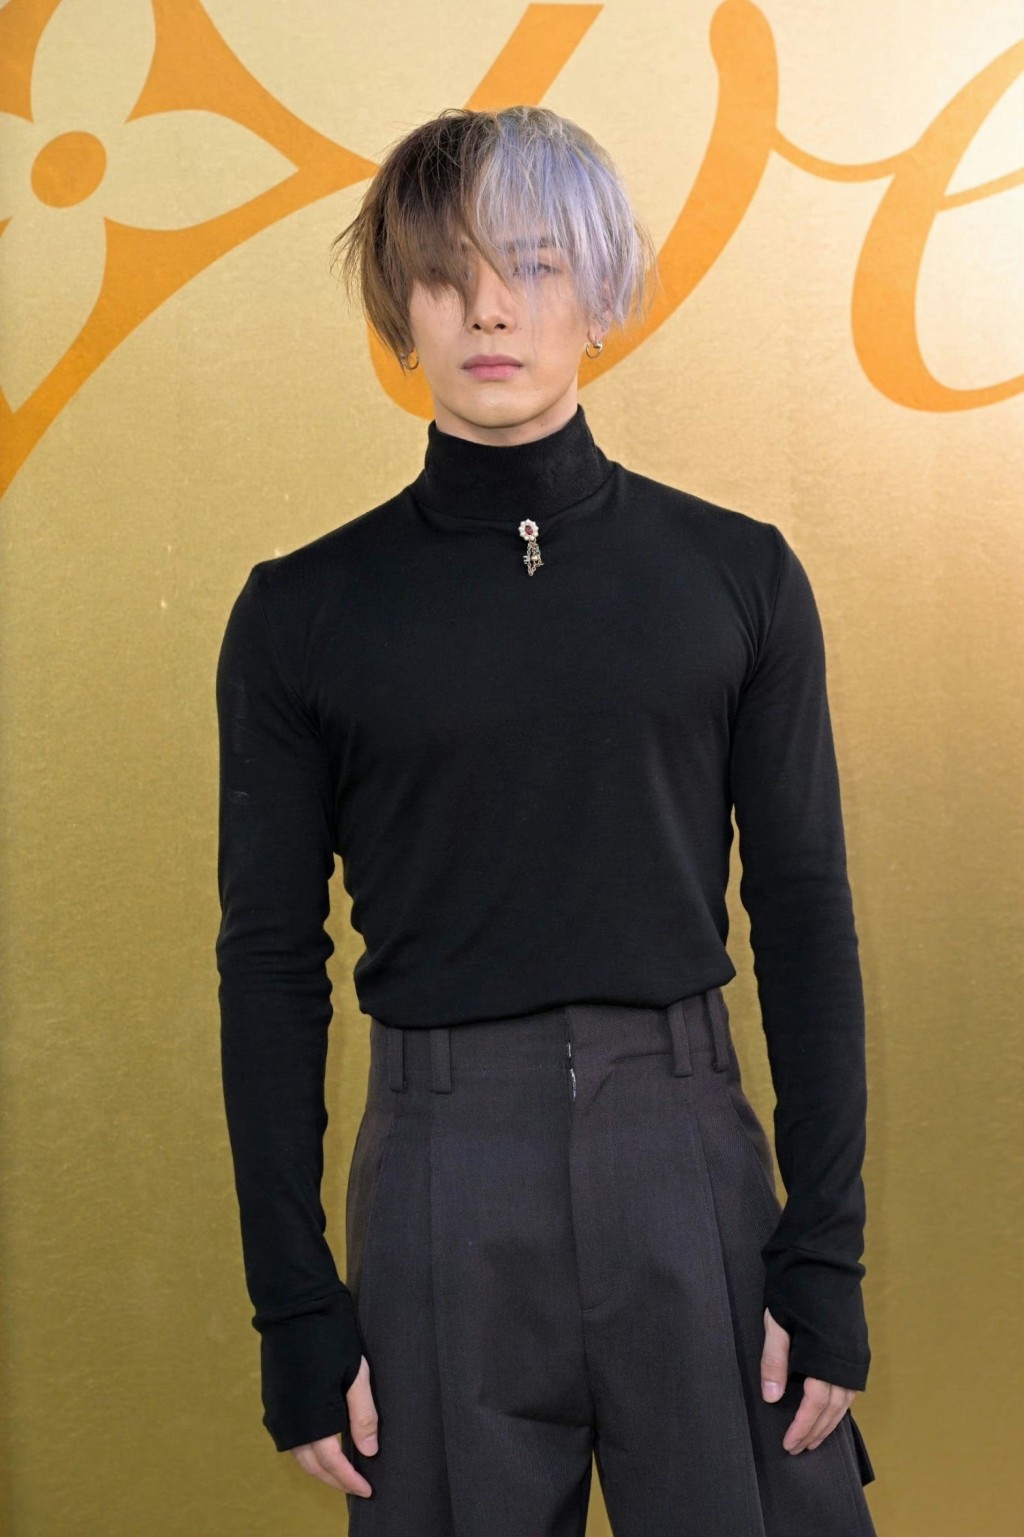 王嘉尔简单黑色套装个性风格活动照图片